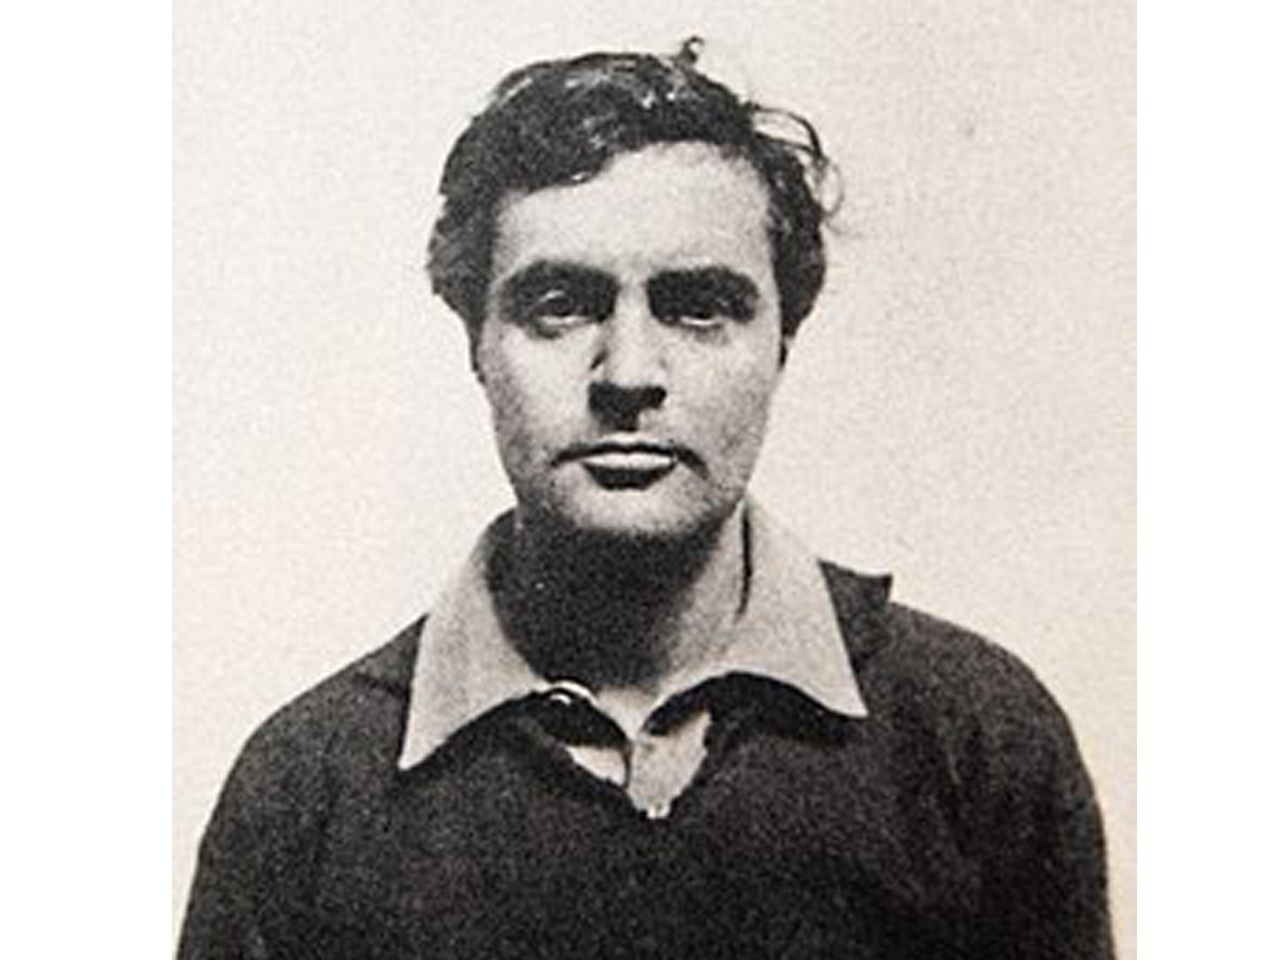 portrait photographique d'Amadeo Modigliani